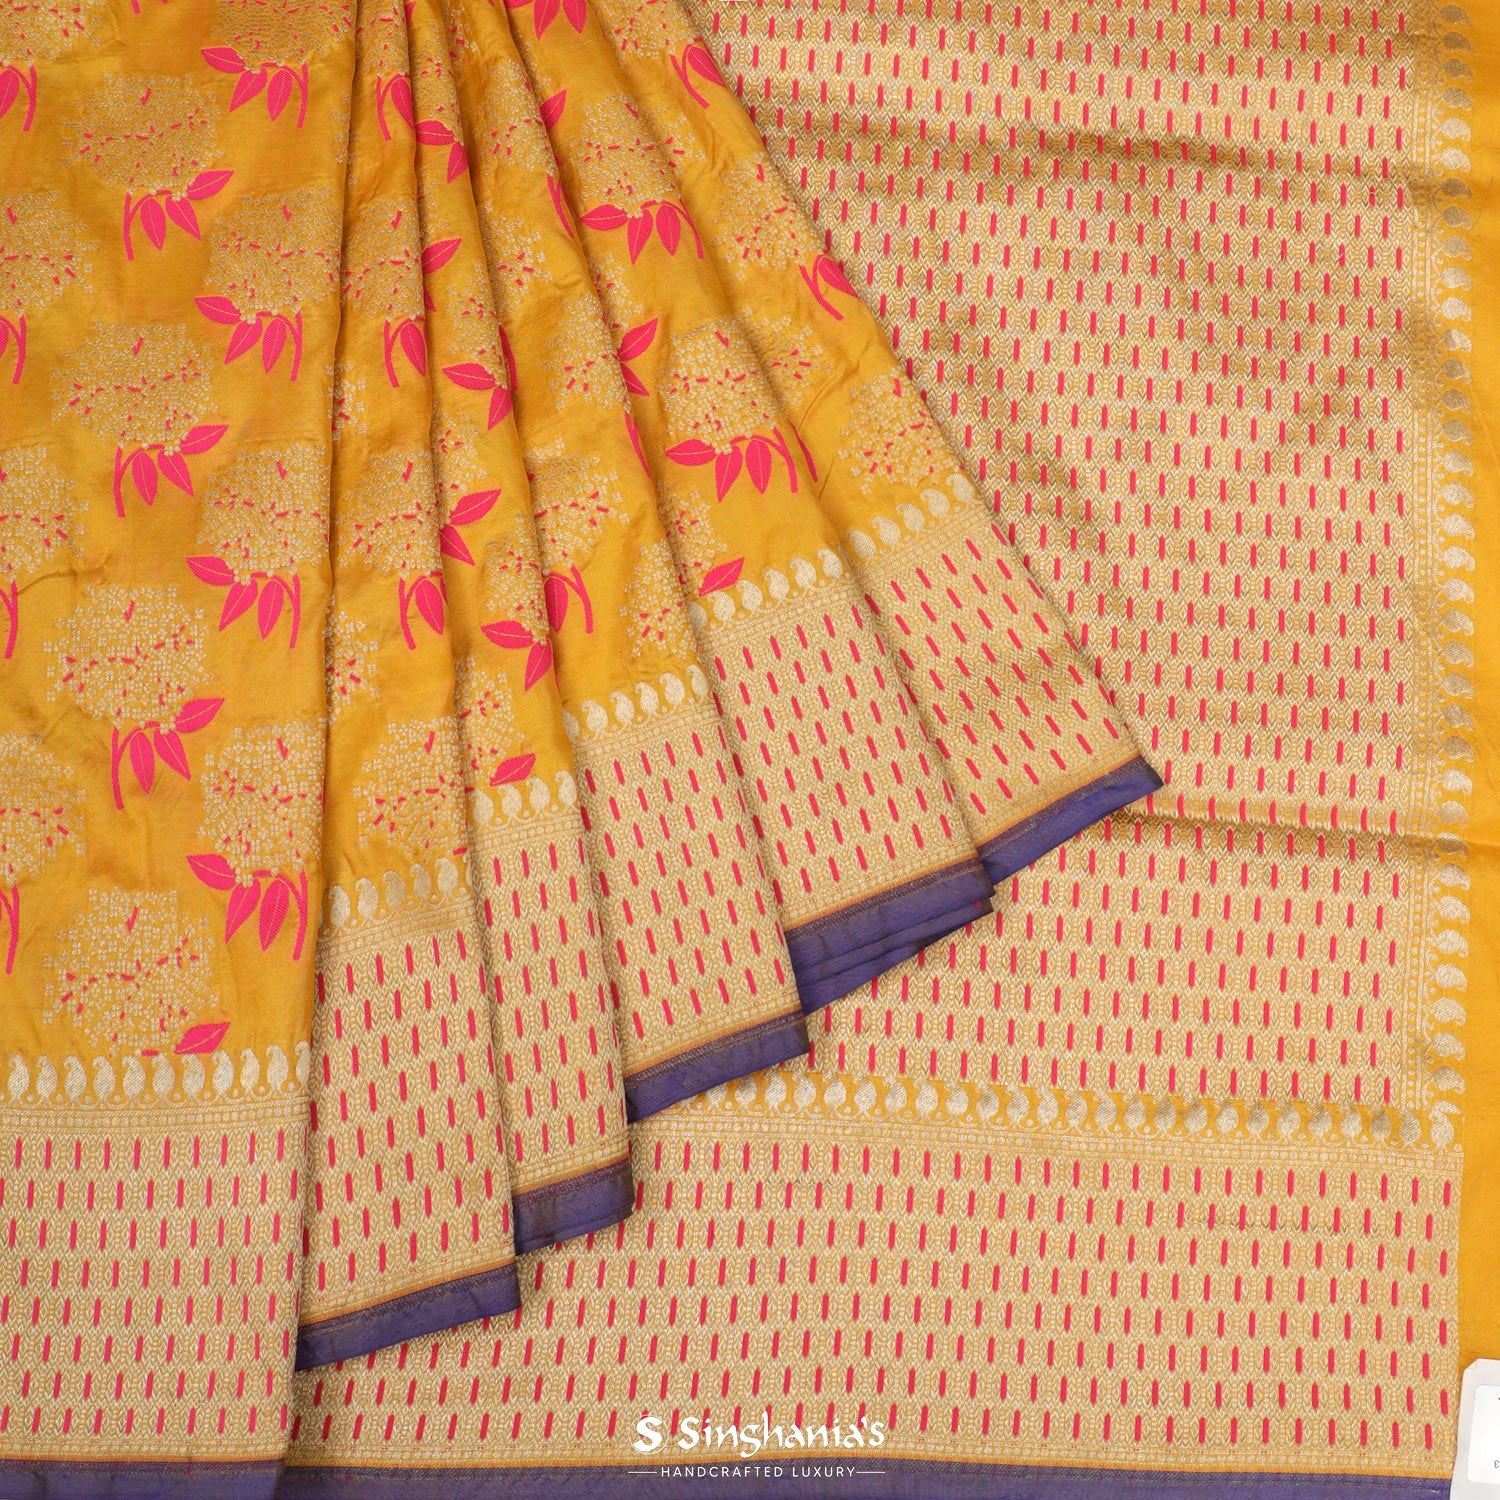 Deep Golden Yellow Banarasi Saree With Meenakari Floral Weaving